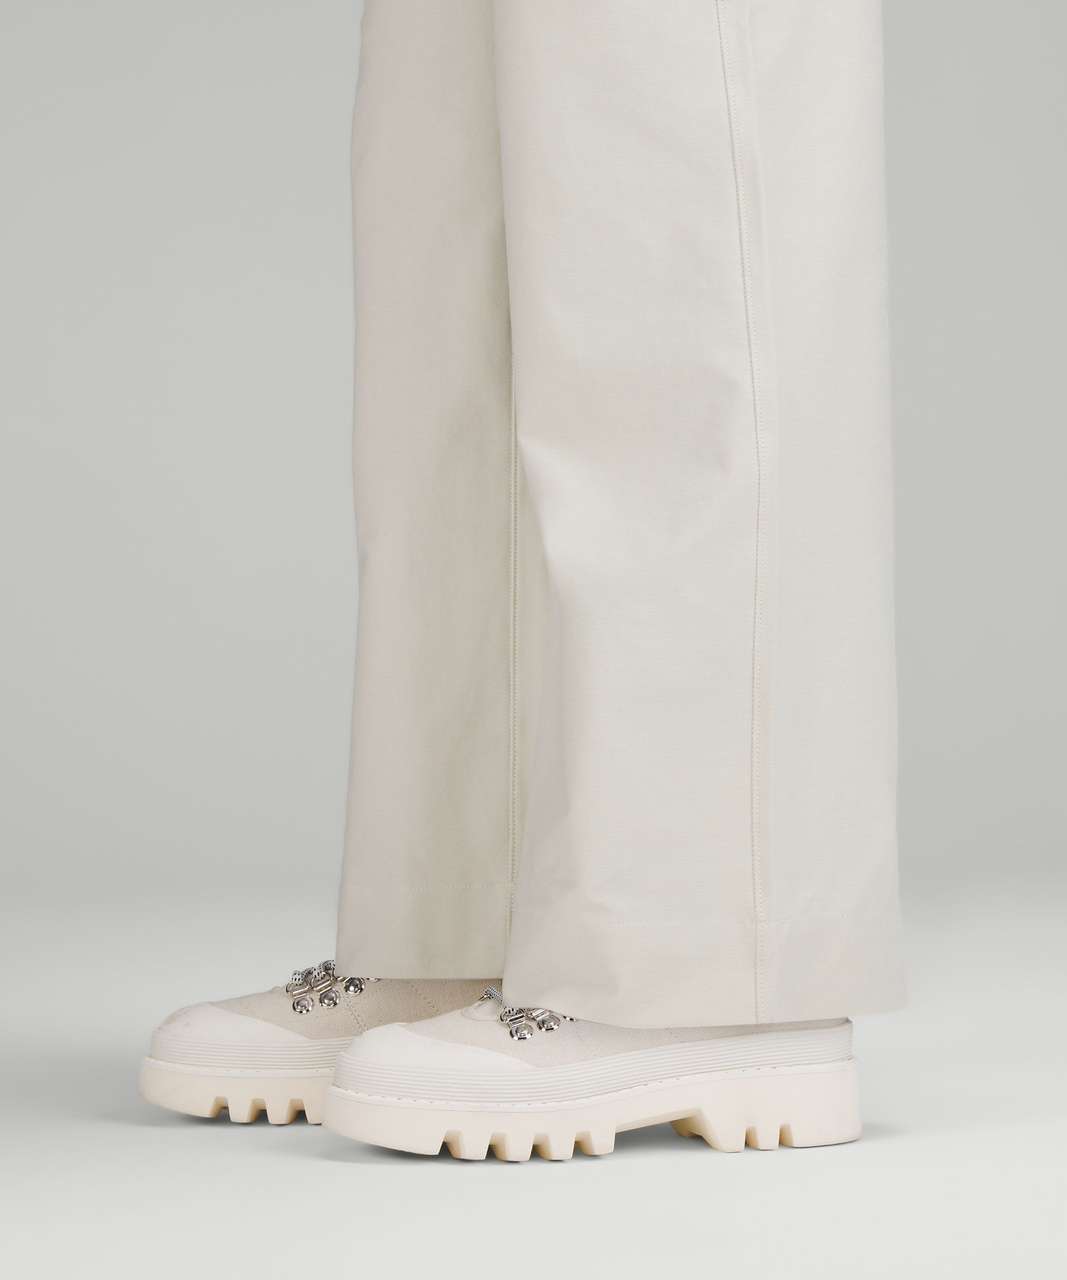 Lululemon City Sleek 5 Pocket High-Rise Wide-Leg Pant Full Length *Light Utilitech - Bone